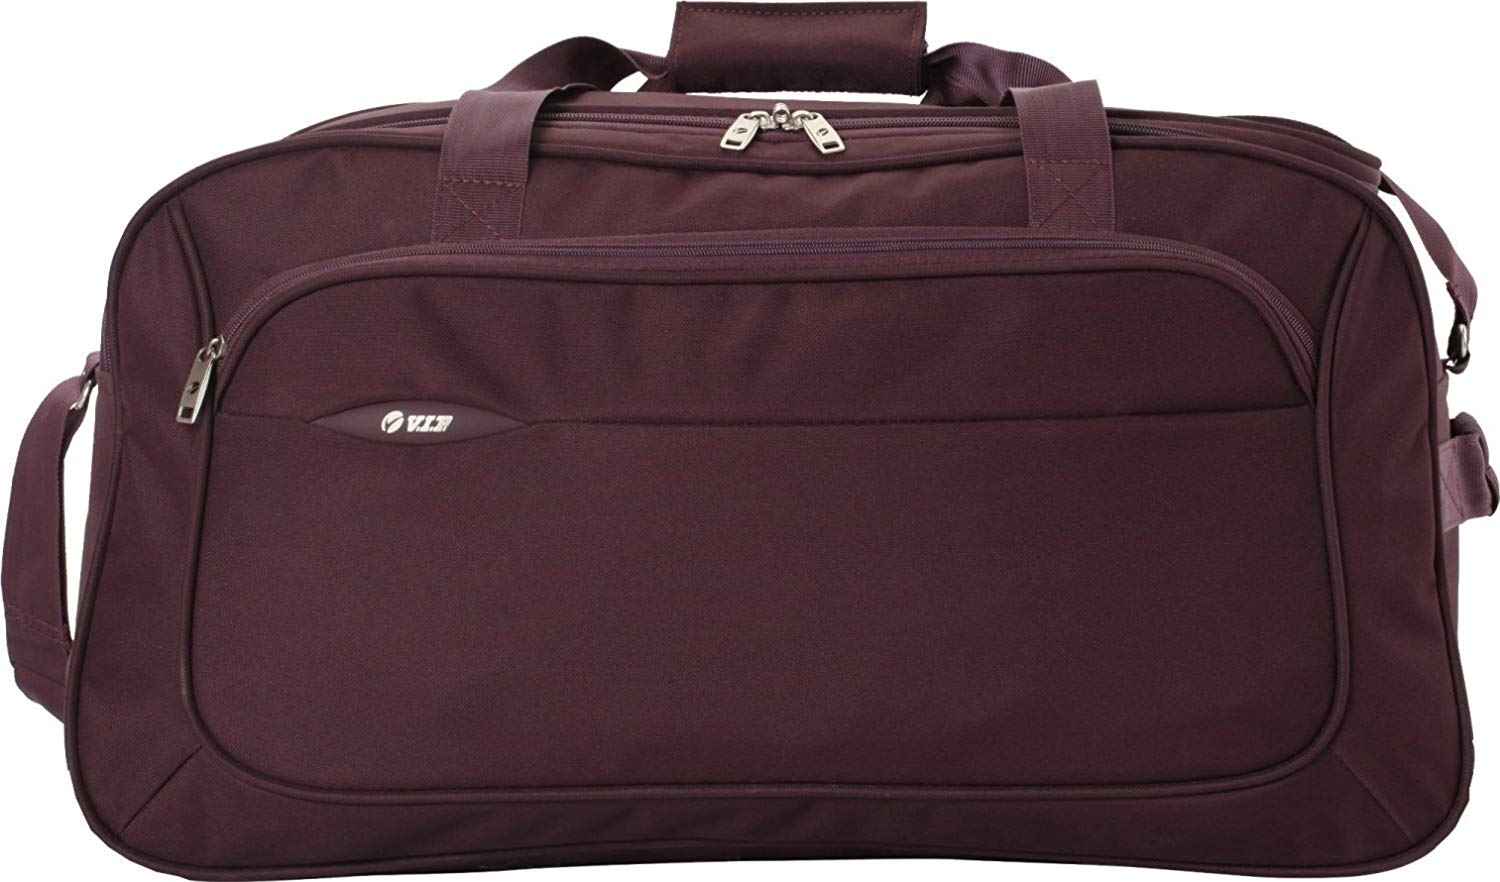 Vip Alfa Duffle Bag at Best Price in New Delhi | Jai Shri Ram Enterprises